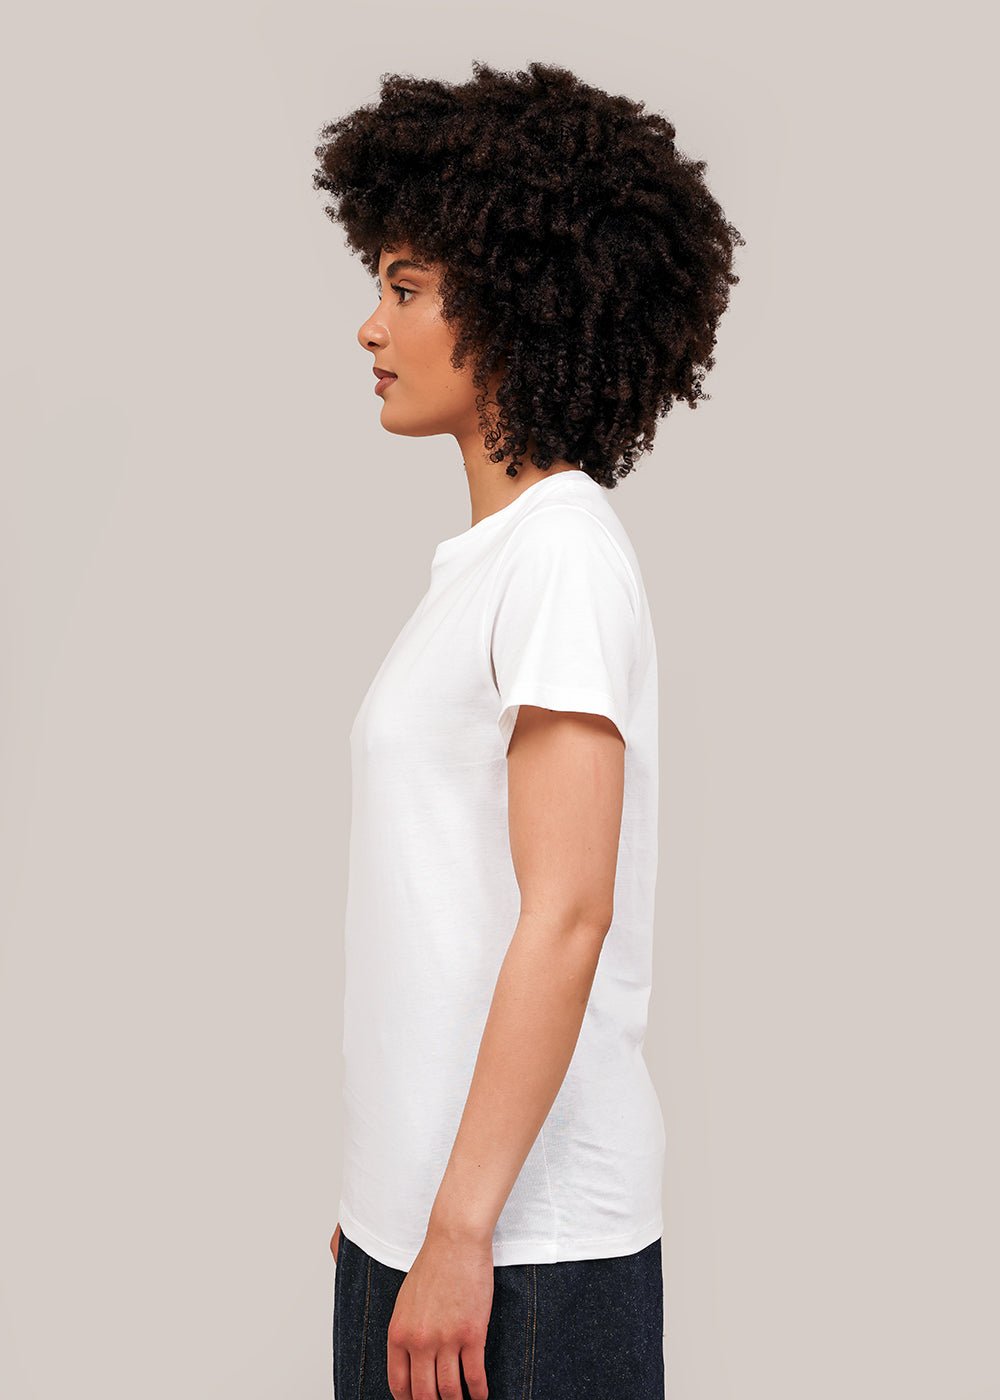 Baserange Off-White Tee Shirt - New Classics Studios Sustainable Ethical Fashion Canada